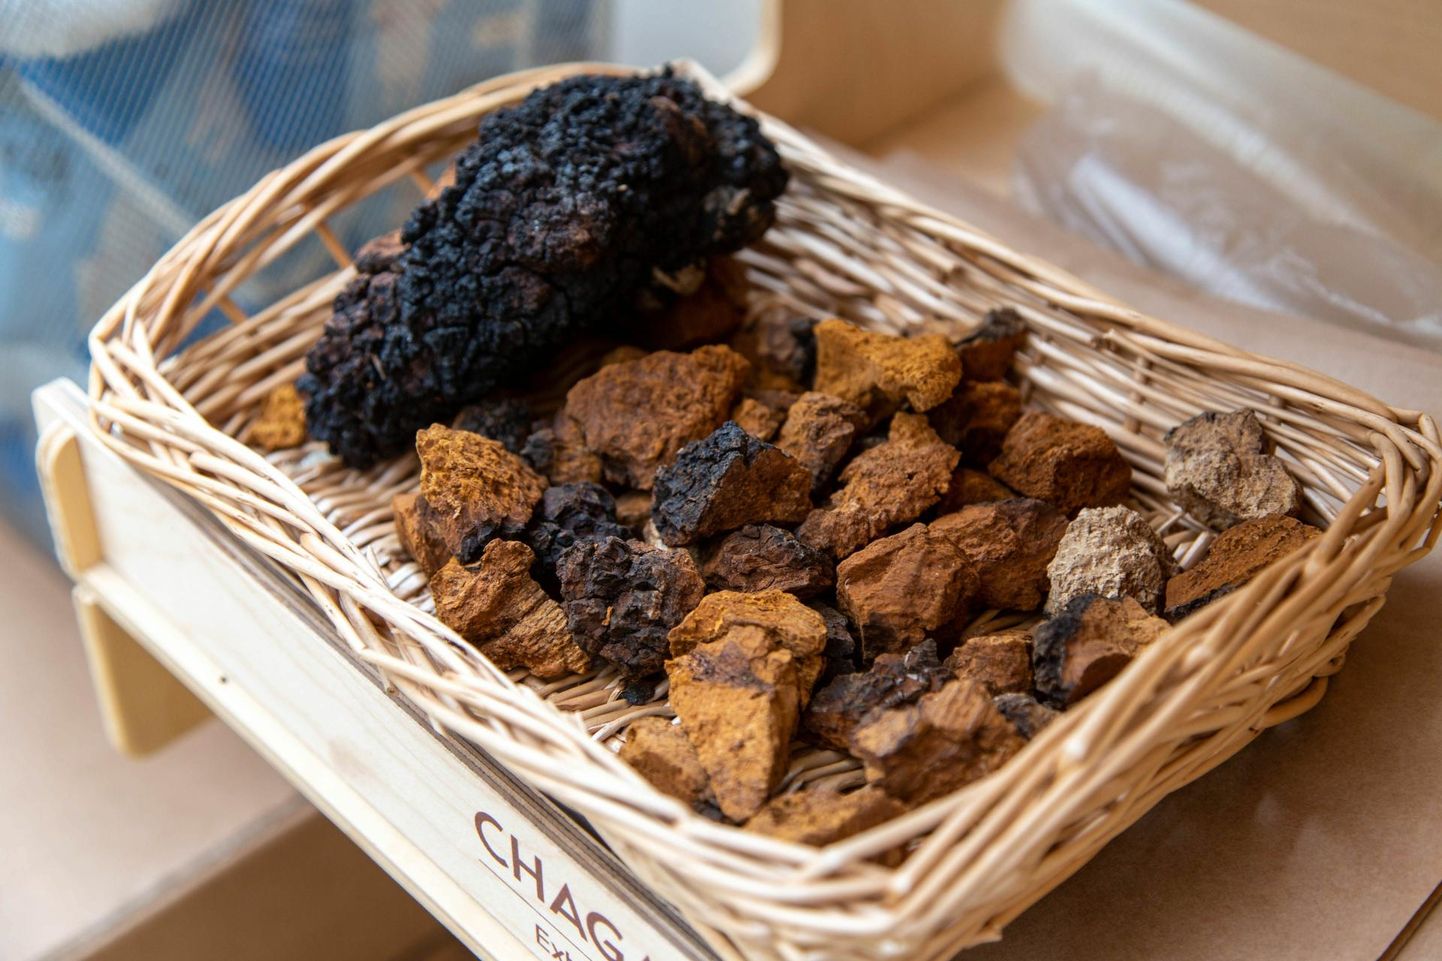 Musta pässikut ehk chaga’t sisaldavaid tooteid toidulisandina on Eesti turul üle 60 ning neid müüakse nii tavalistes kui e-poodides.